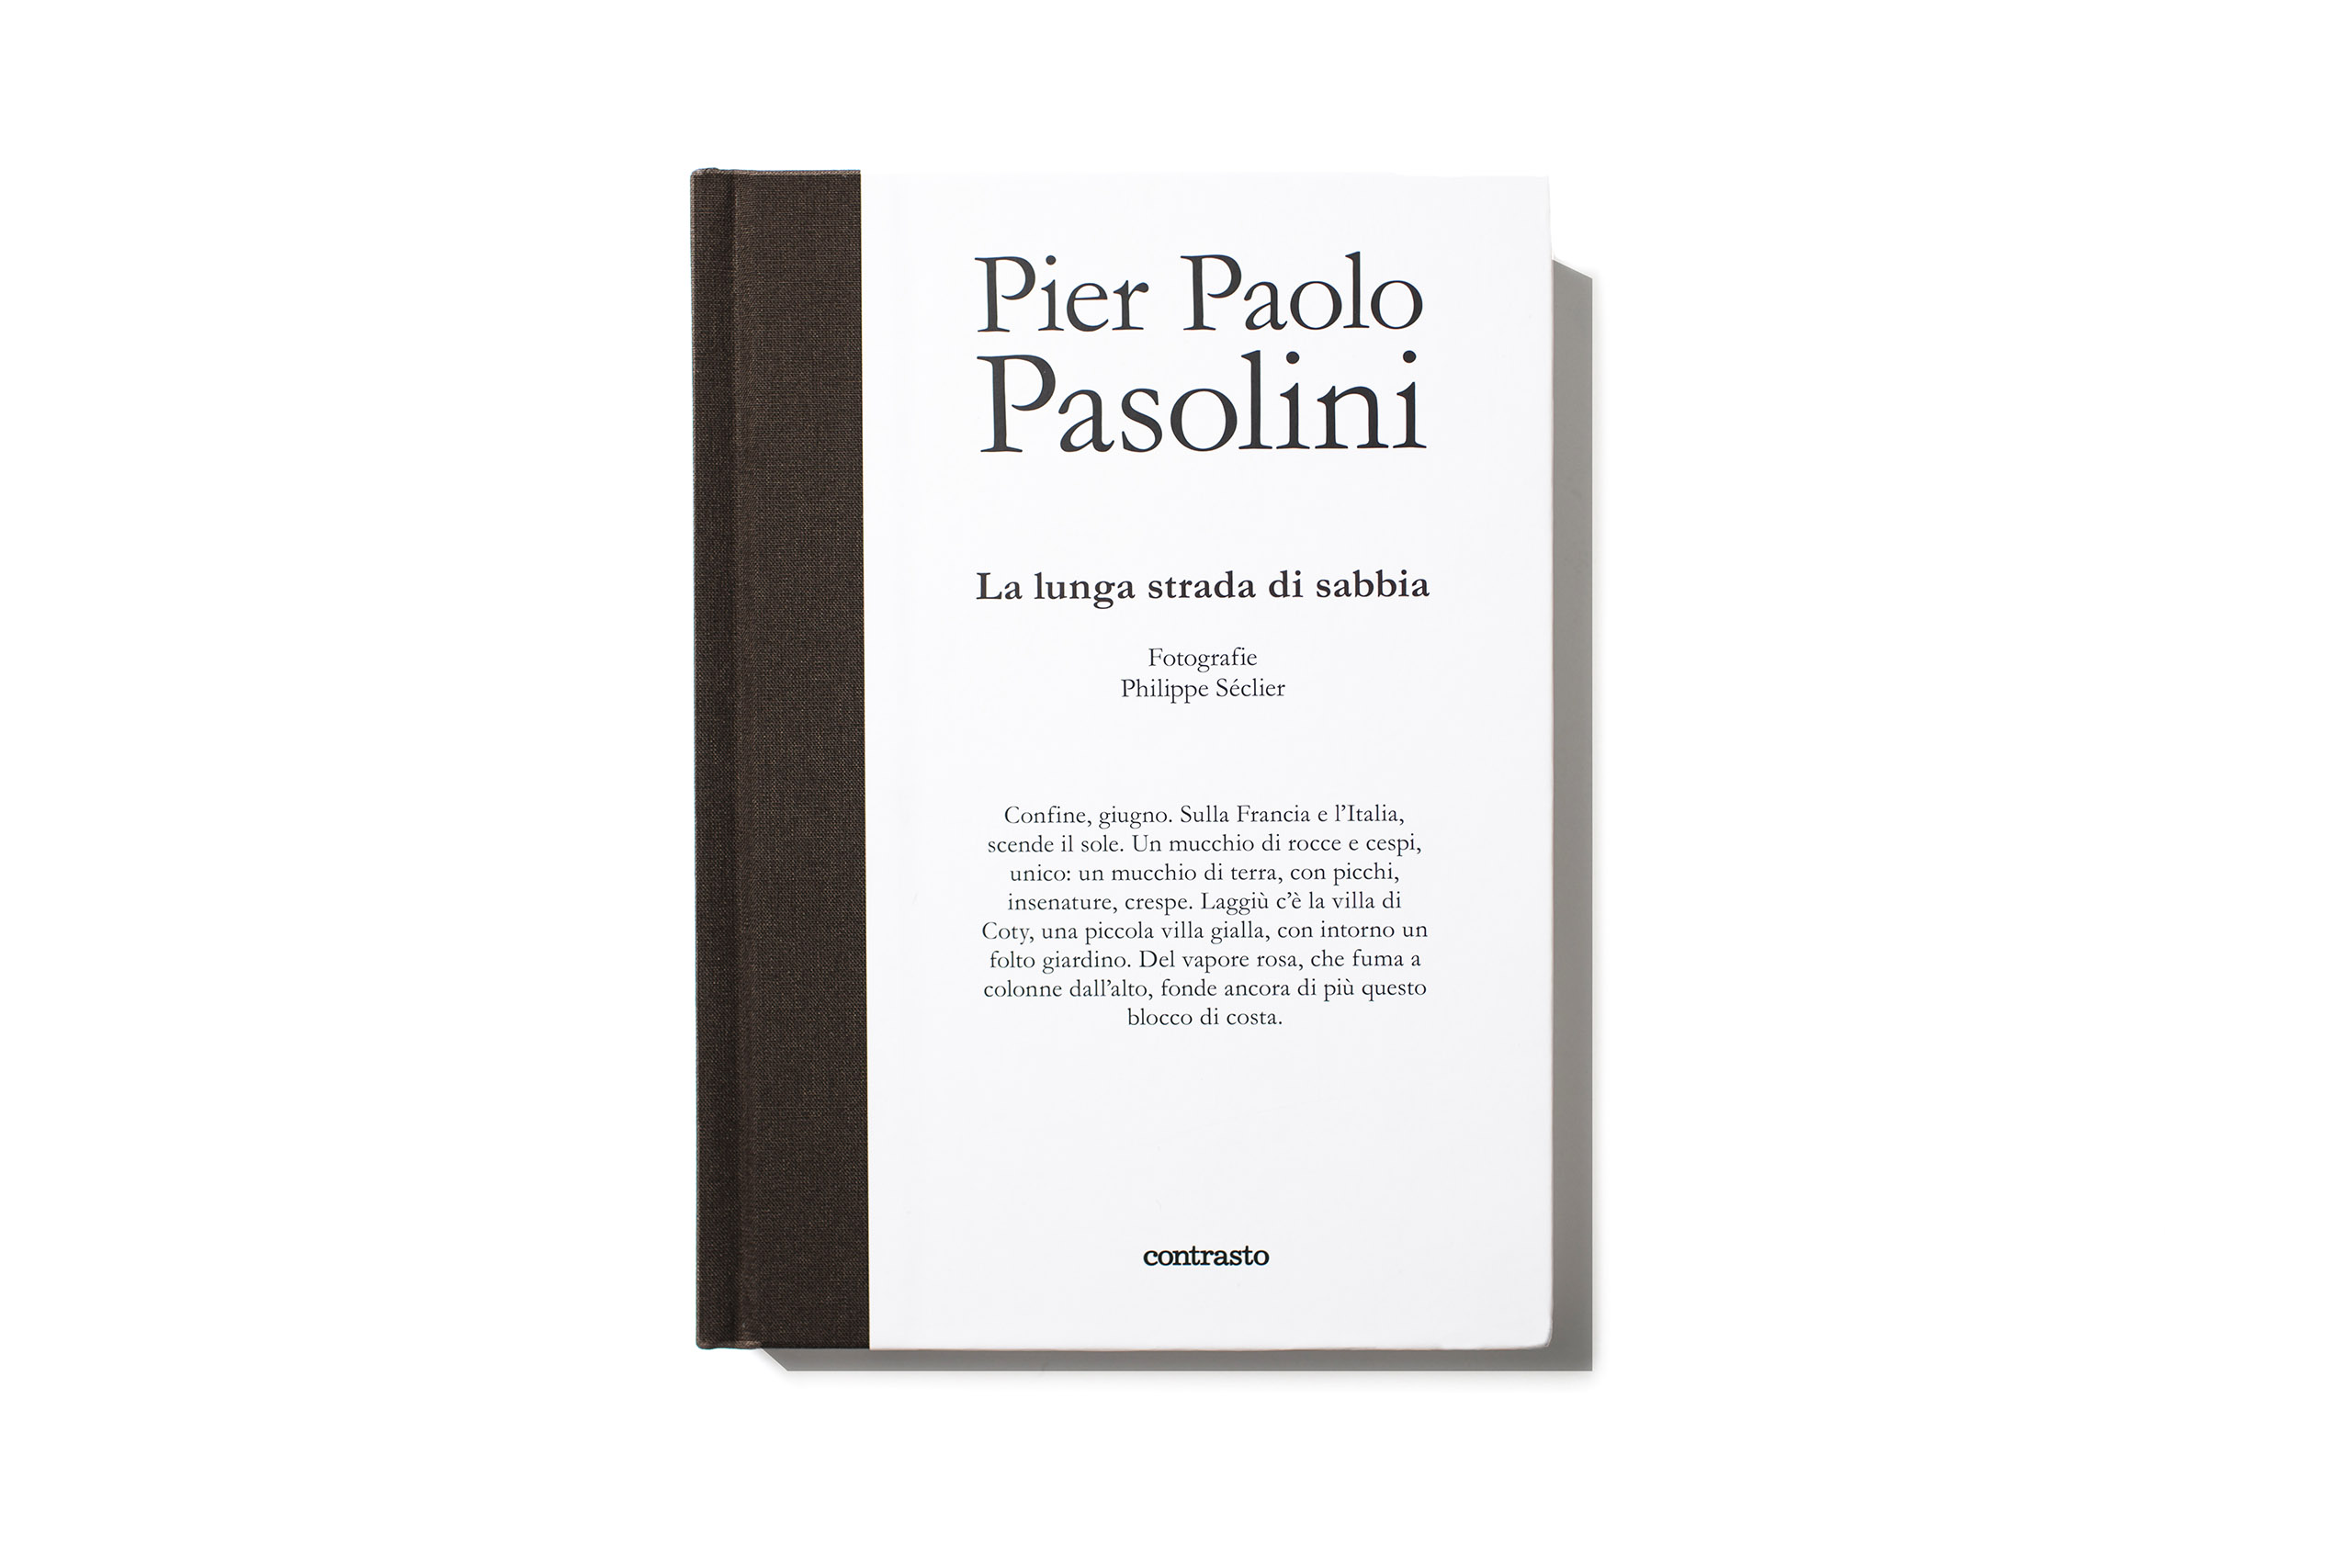 Pier Paolo Pasolini - La lunga strada di sabbia
                              ,published by Contrasto, selected by Yolanda Cuomo, Book Designer.